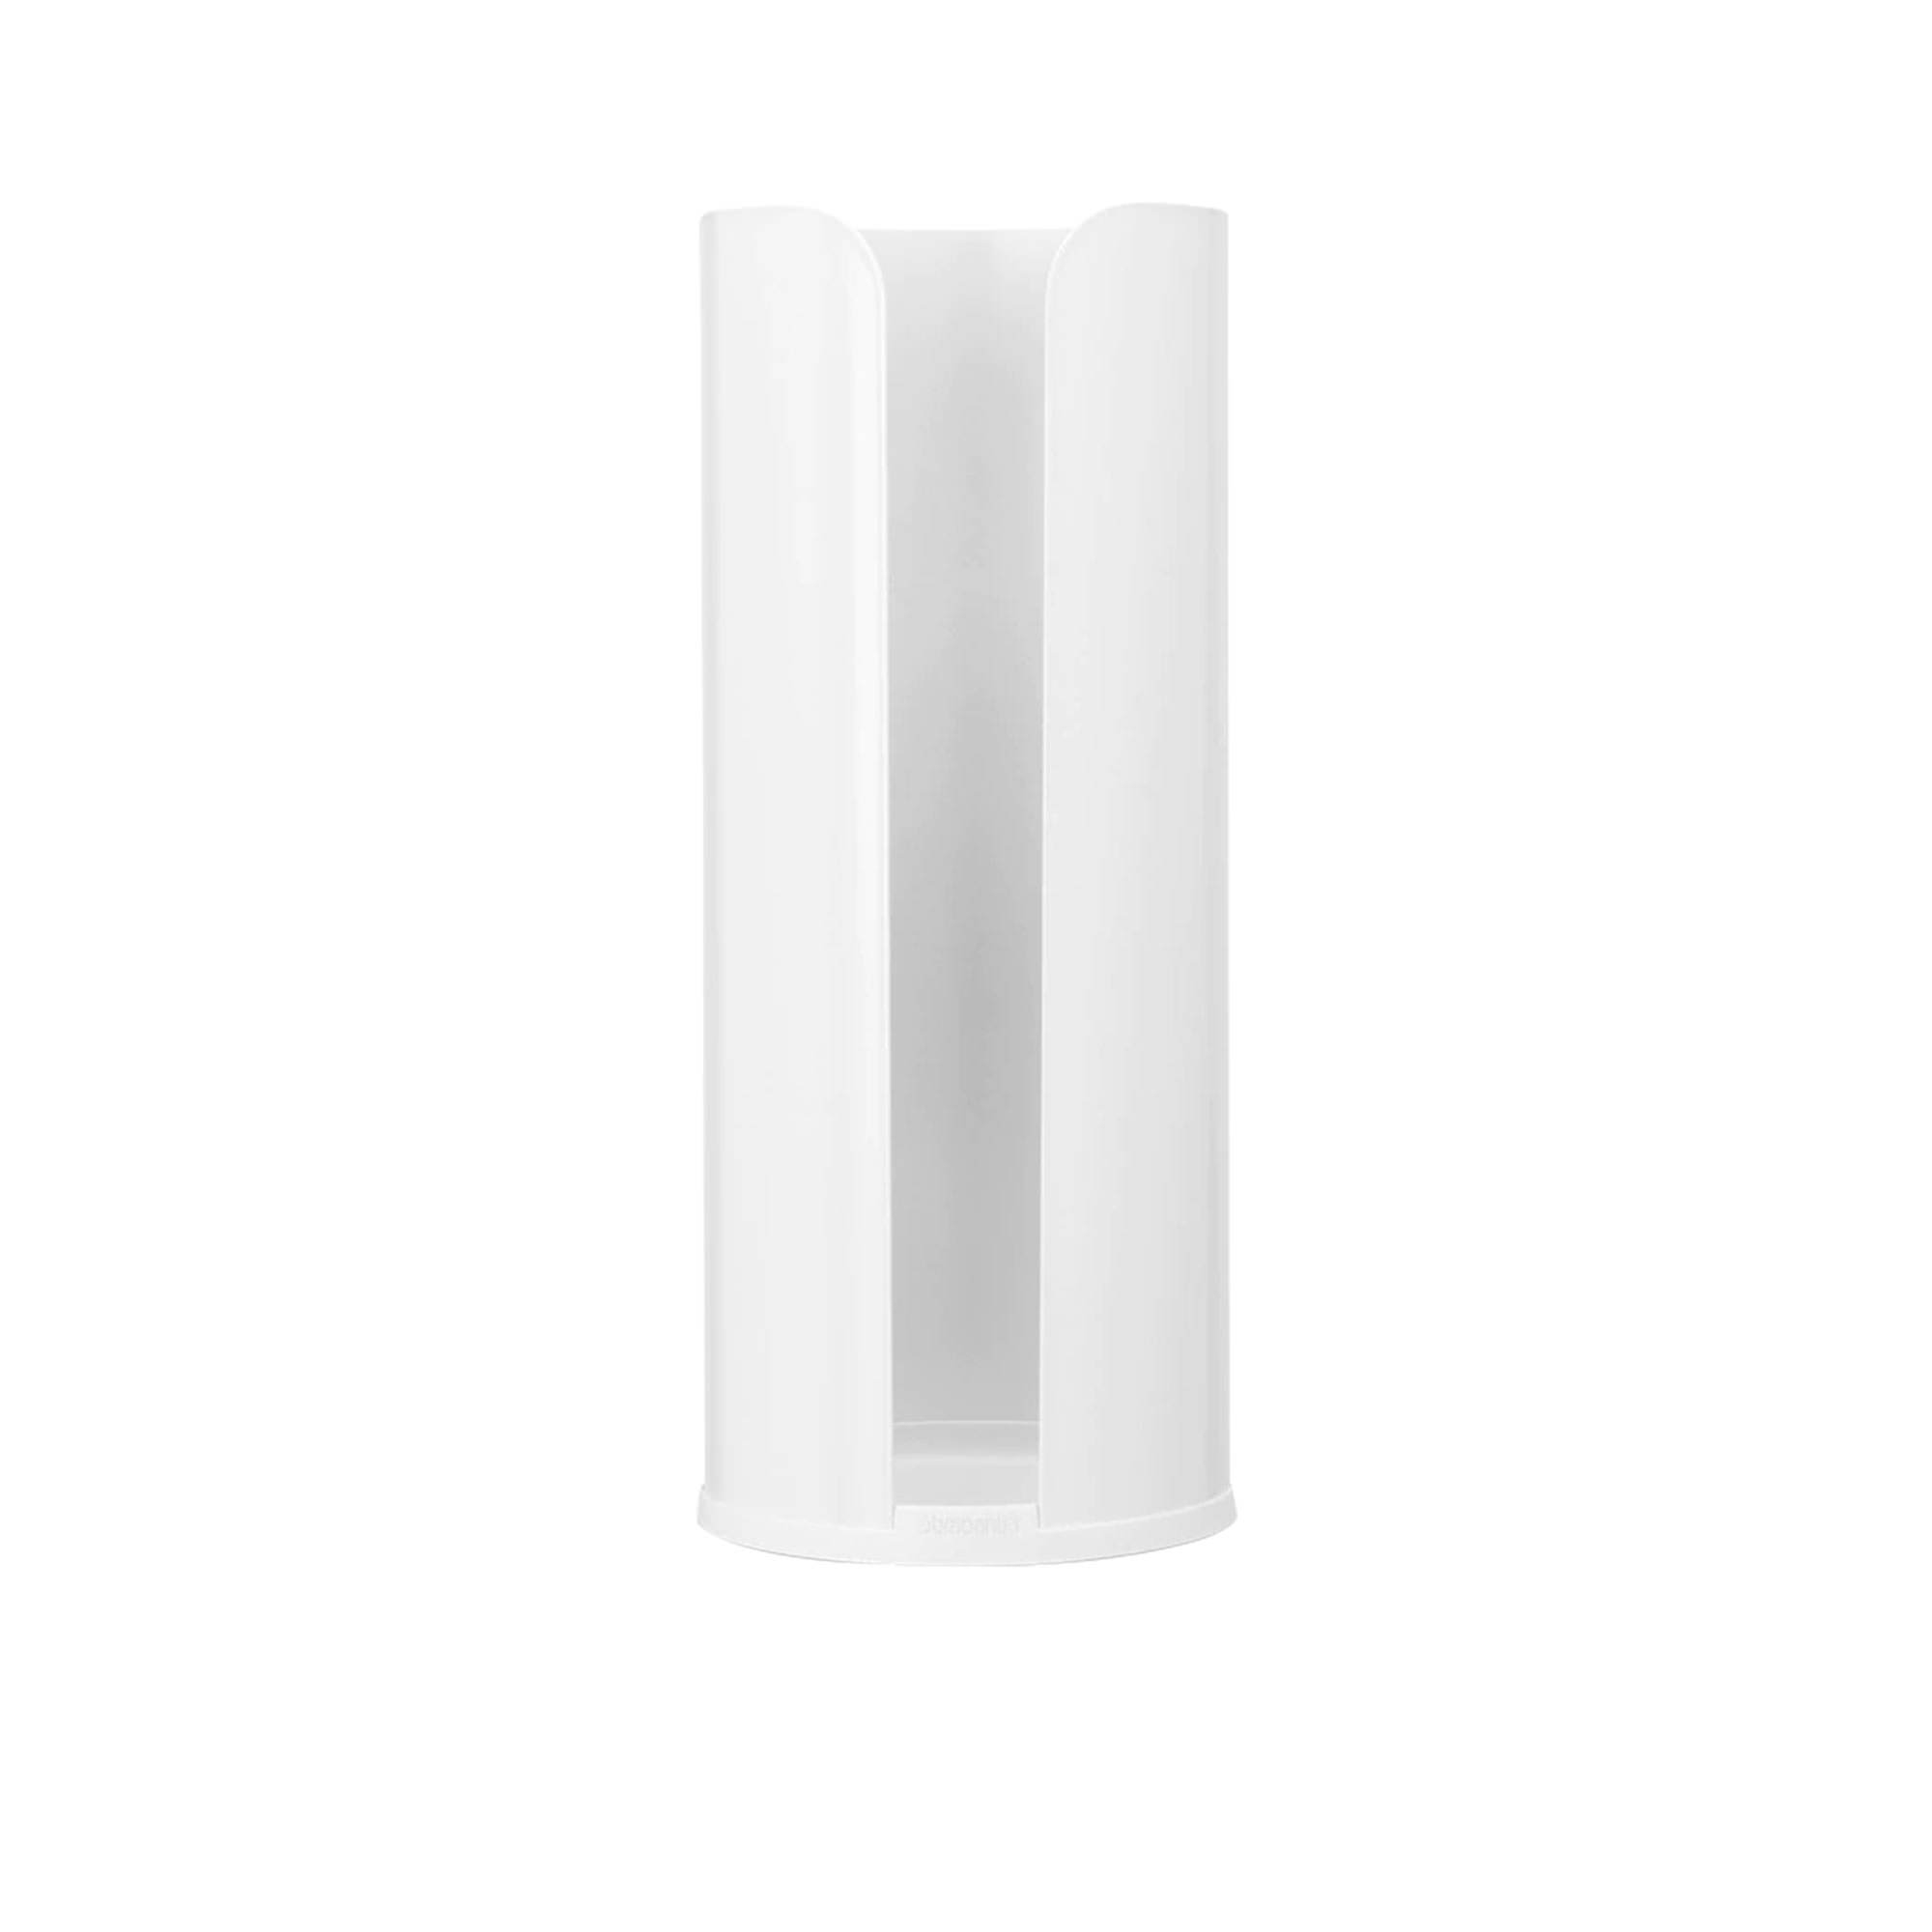 Brabantia Toilet Paper Roll Holder White Image 1